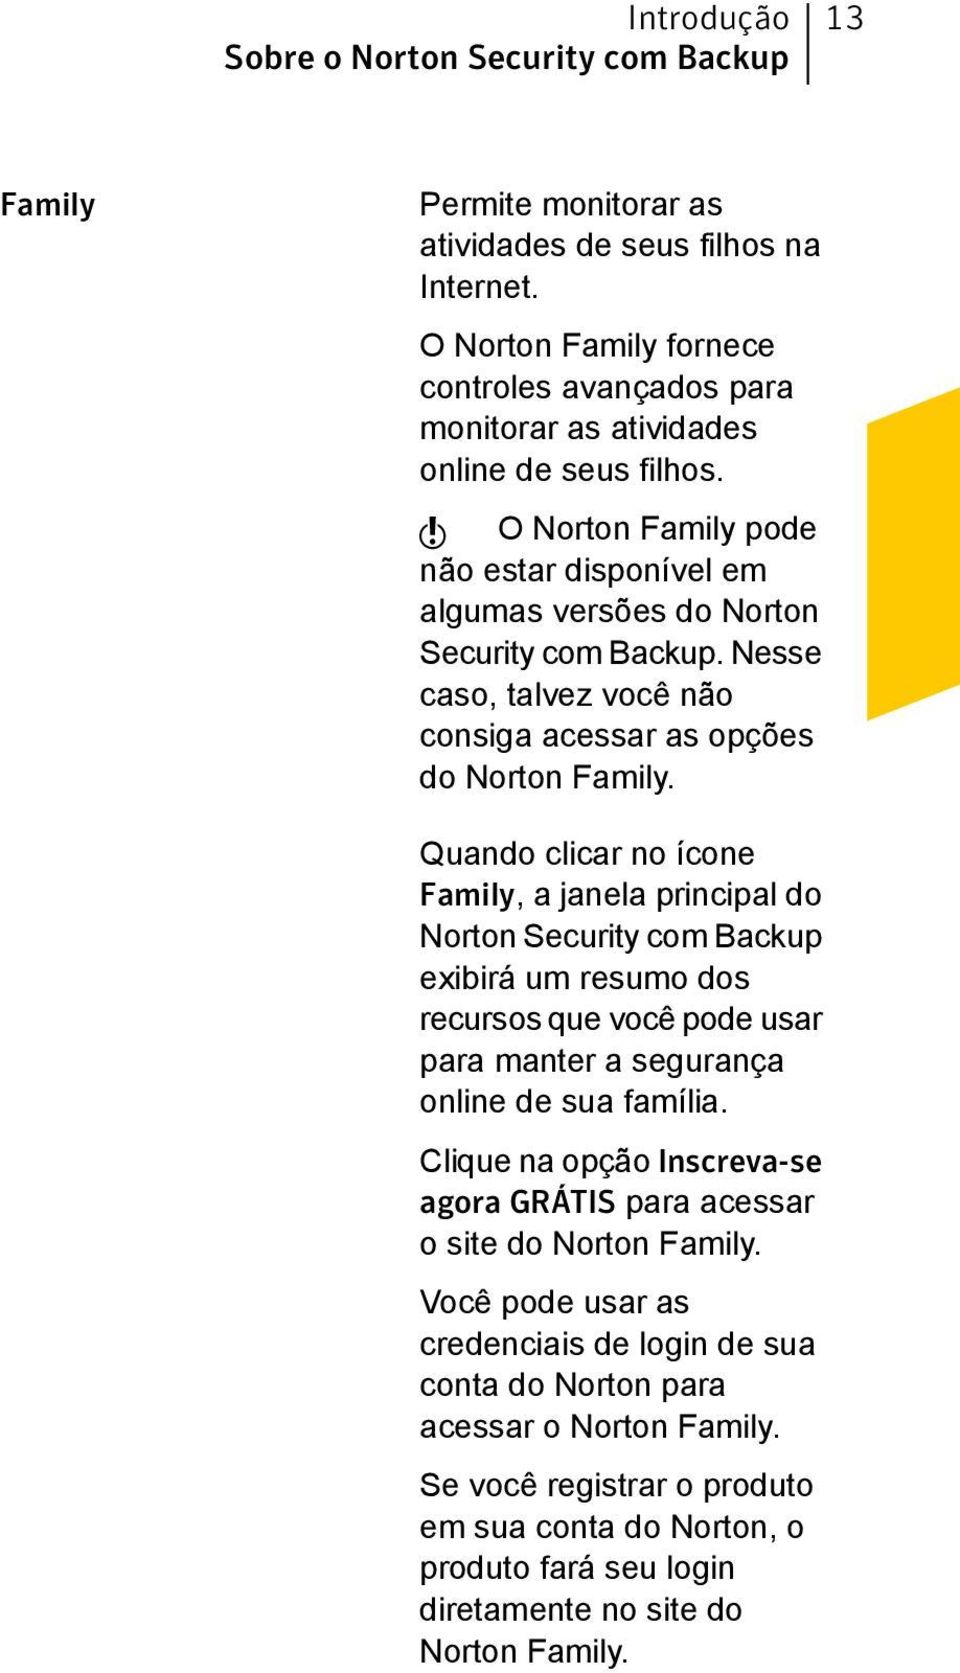 Nesse caso, talvez você não consiga acessar as opções do Norton Family.